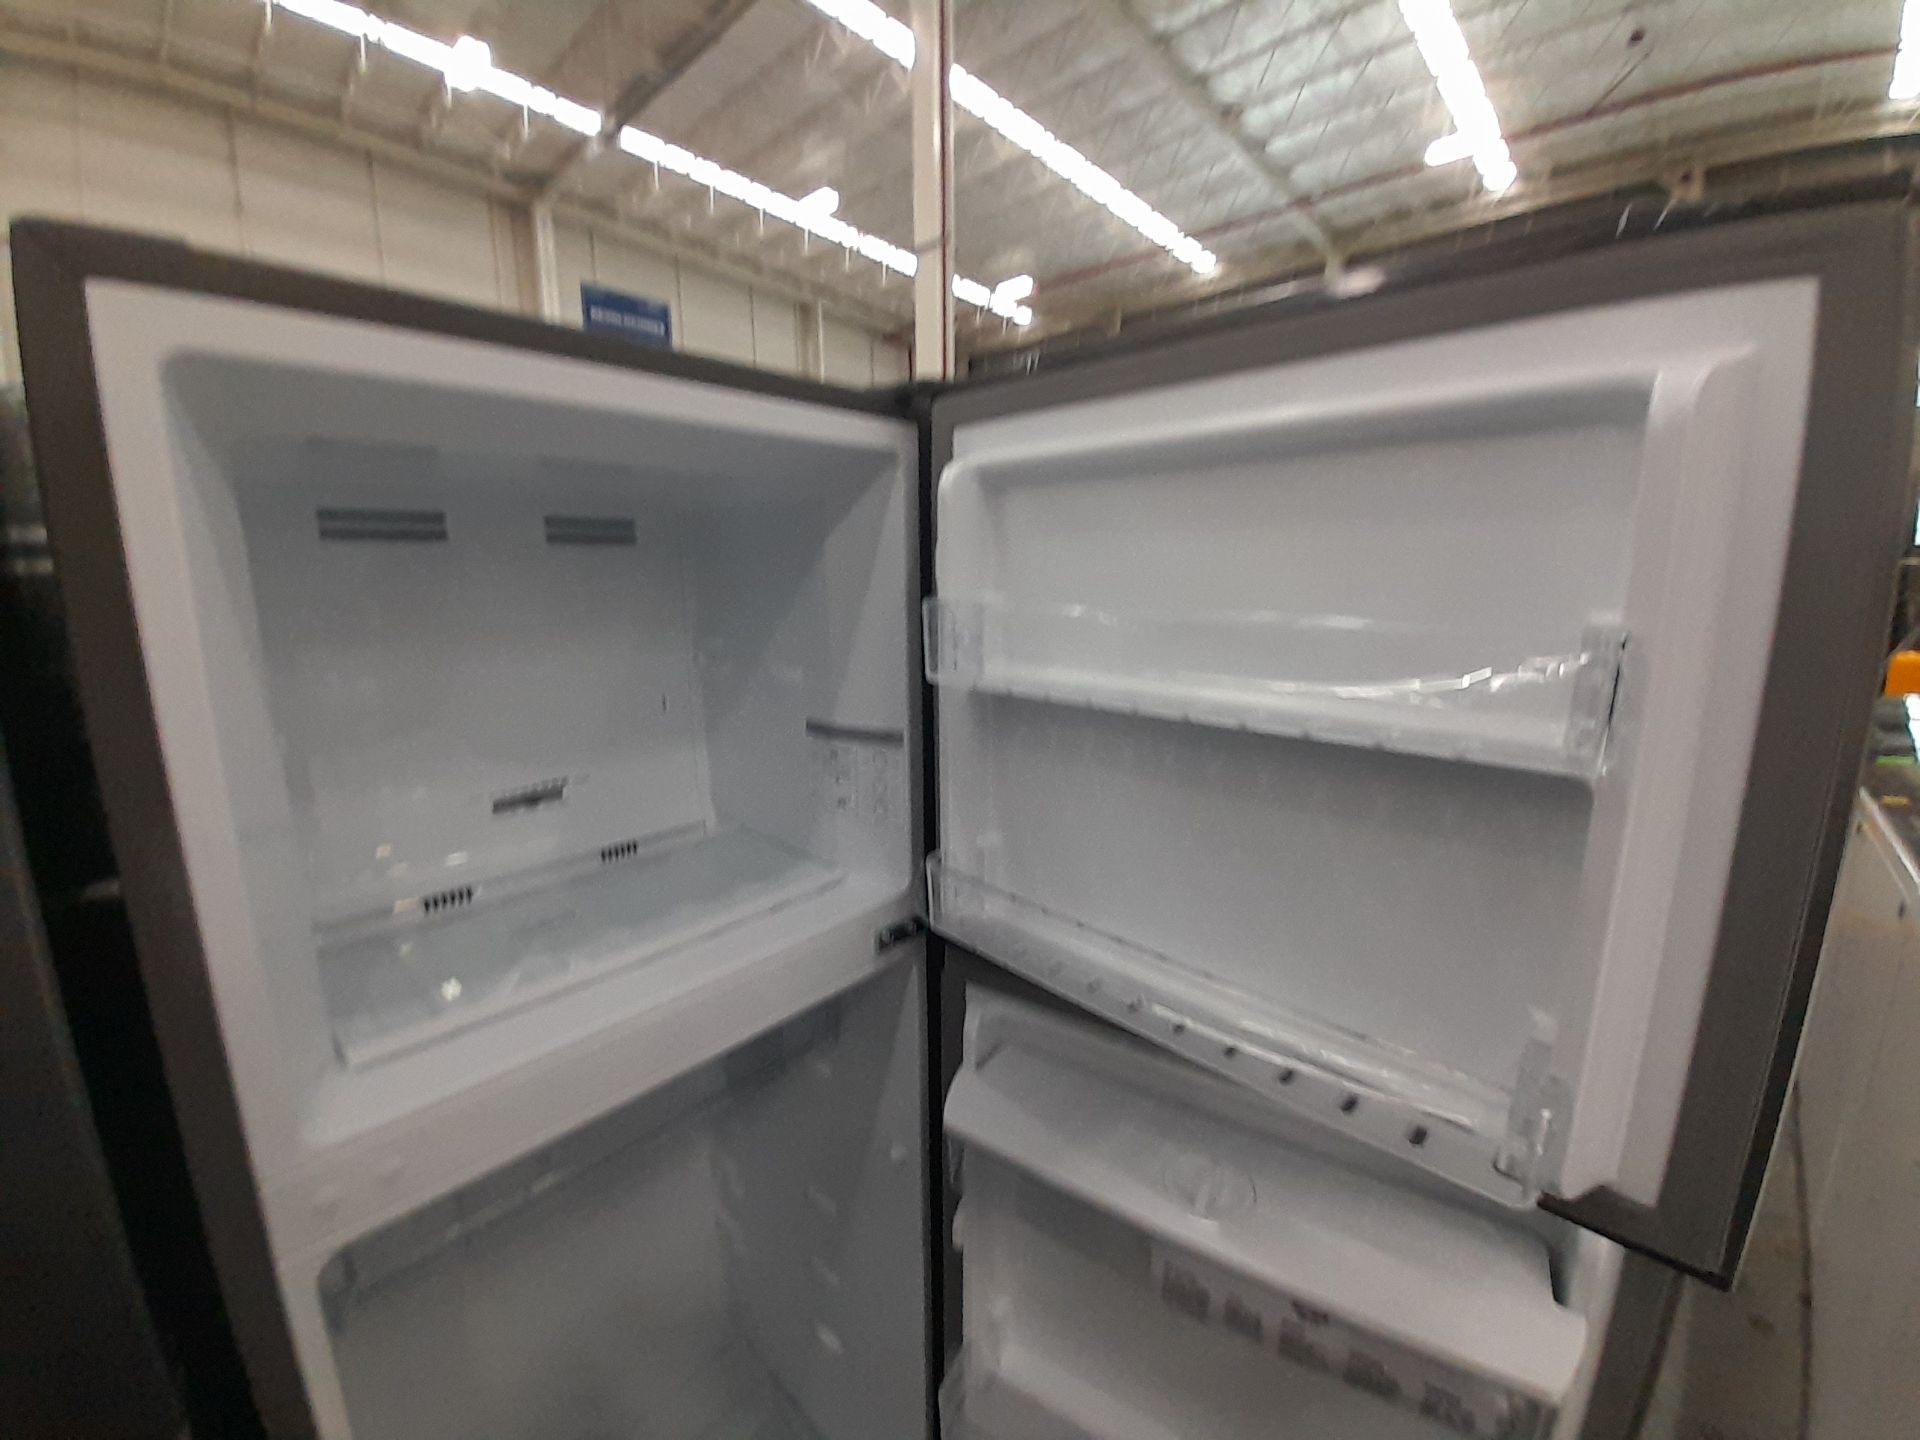 Lote de 2 refrigeradores contiene: 1 Refrigerador Marca WINIA, Modelo WRT9000AMMX, Color GRIS; - Image 6 of 8